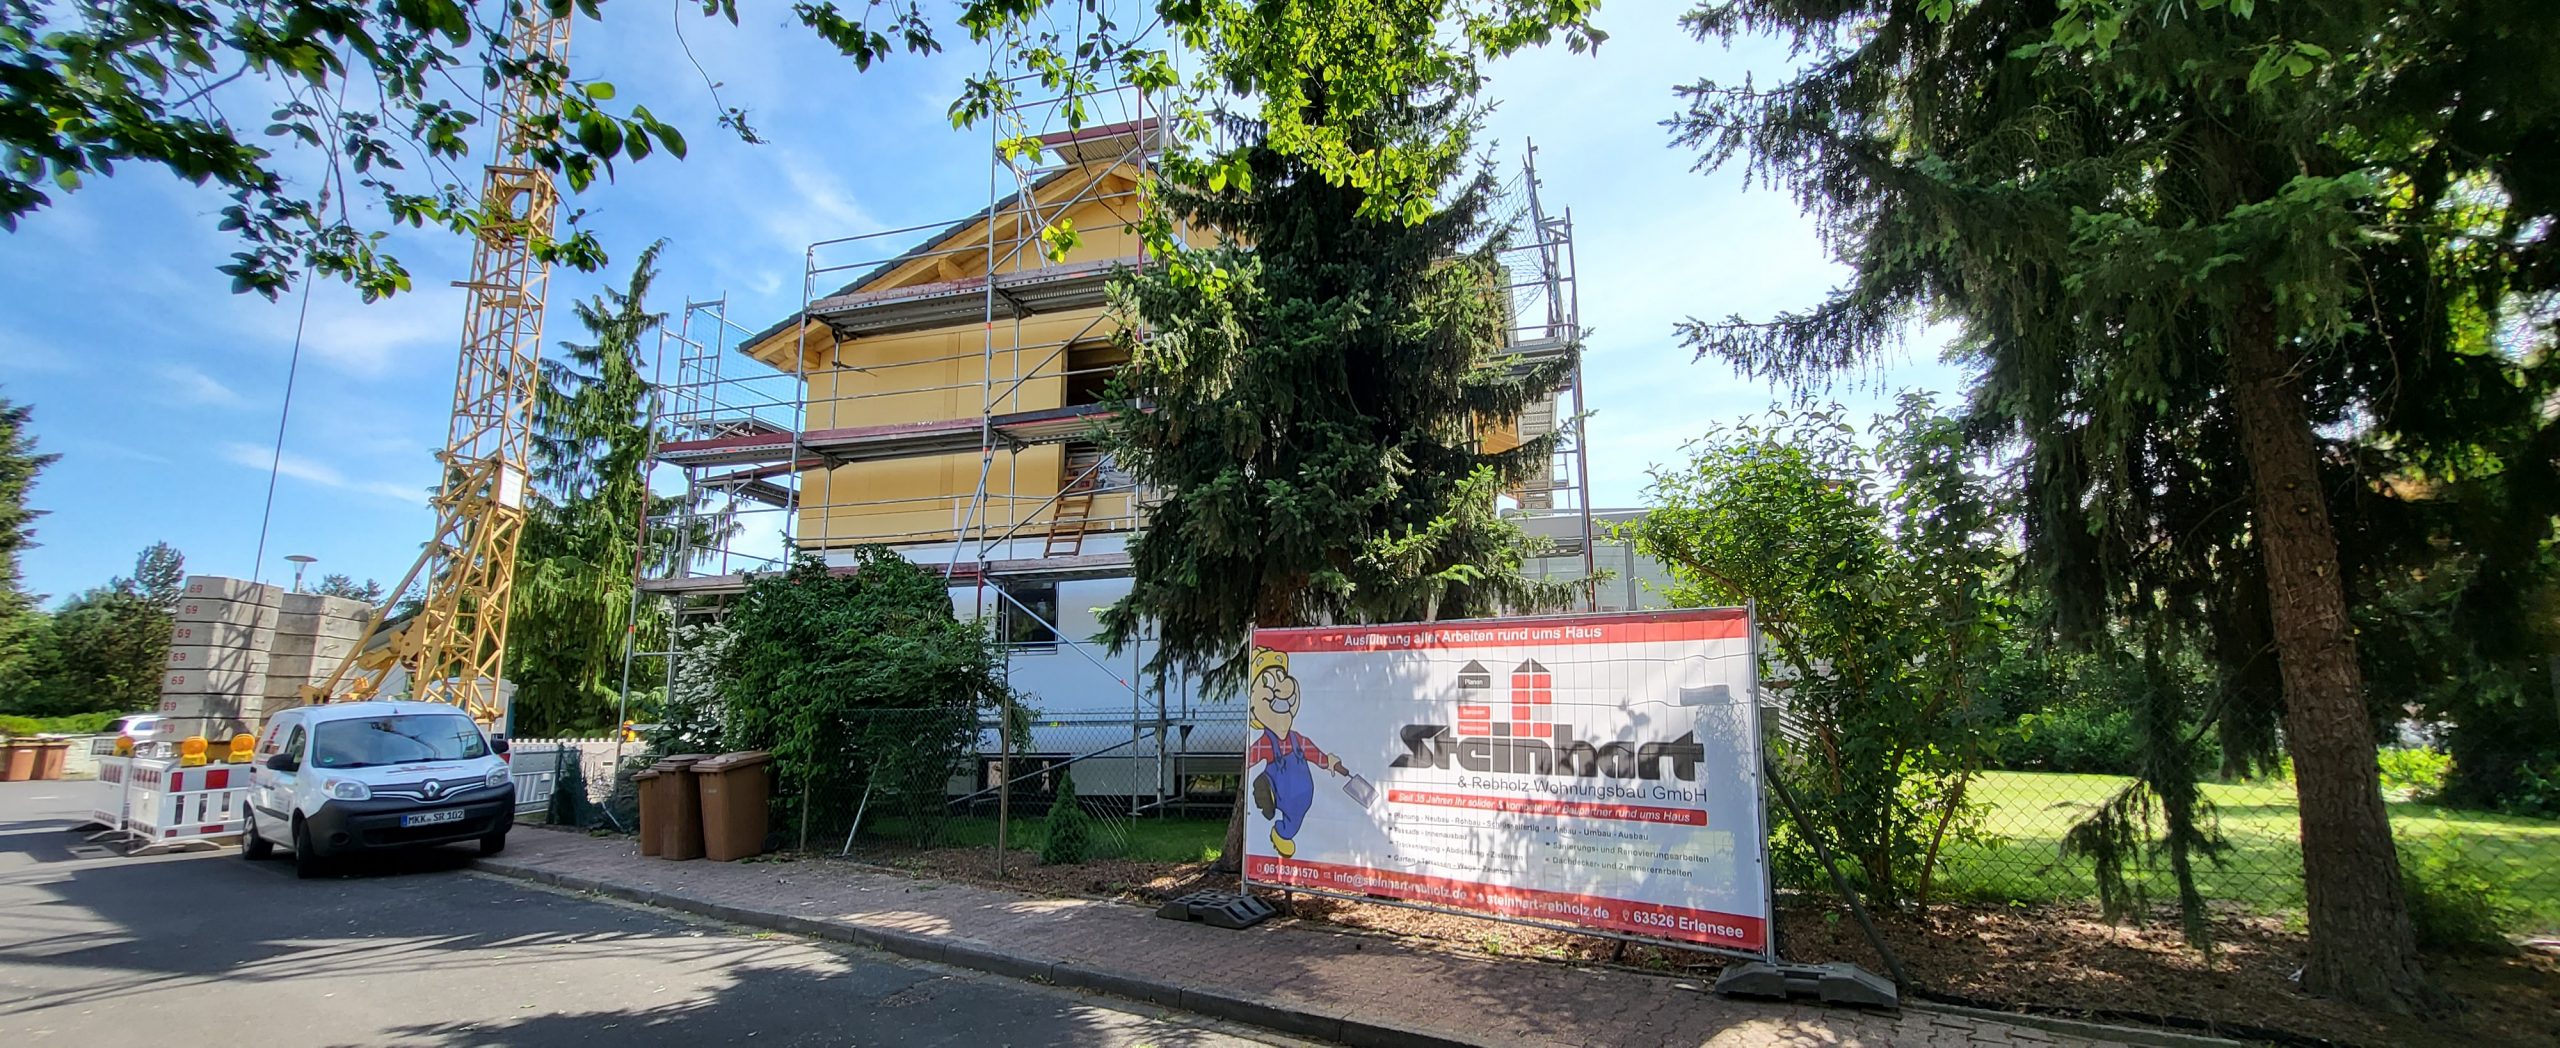 Wohnhaus Aufstockung um eine Wohneinheit in Holzrahmenbauweise in Erlensee – Schlüsselfertig